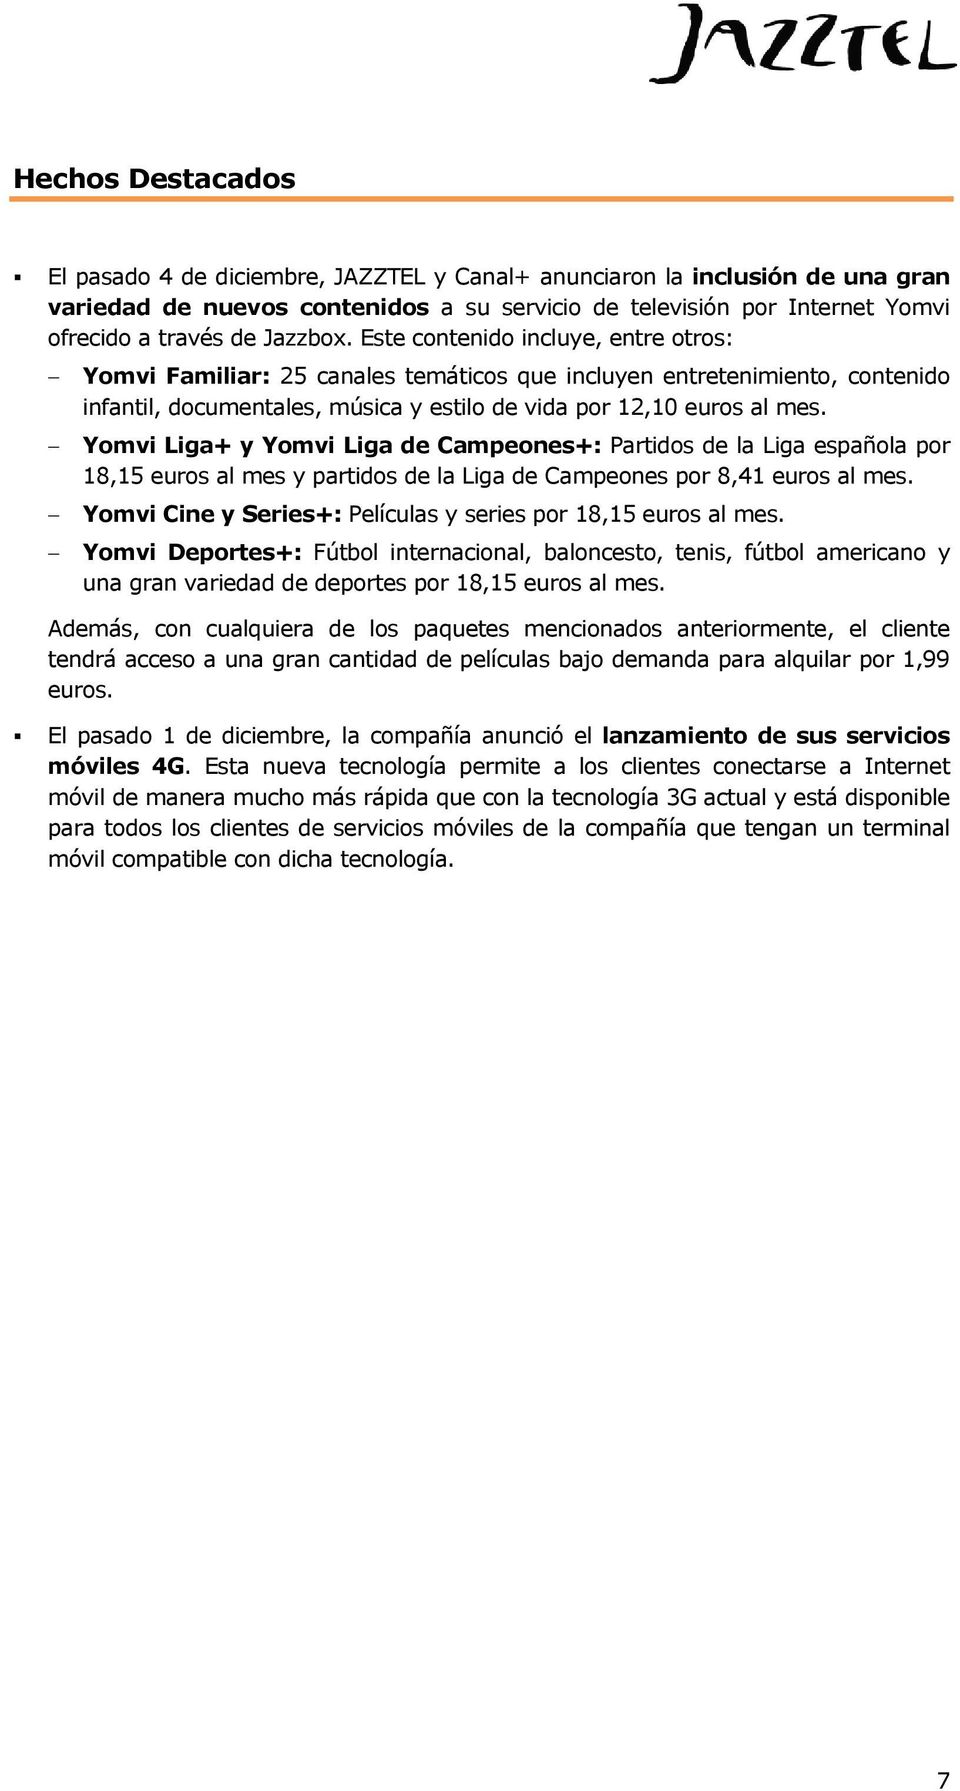 Yomvi Liga+ y Yomvi Liga de Campeones+: Partidos de la Liga española por 18,15 euros al mes y partidos de la Liga de Campeones por 8,41 euros al mes.